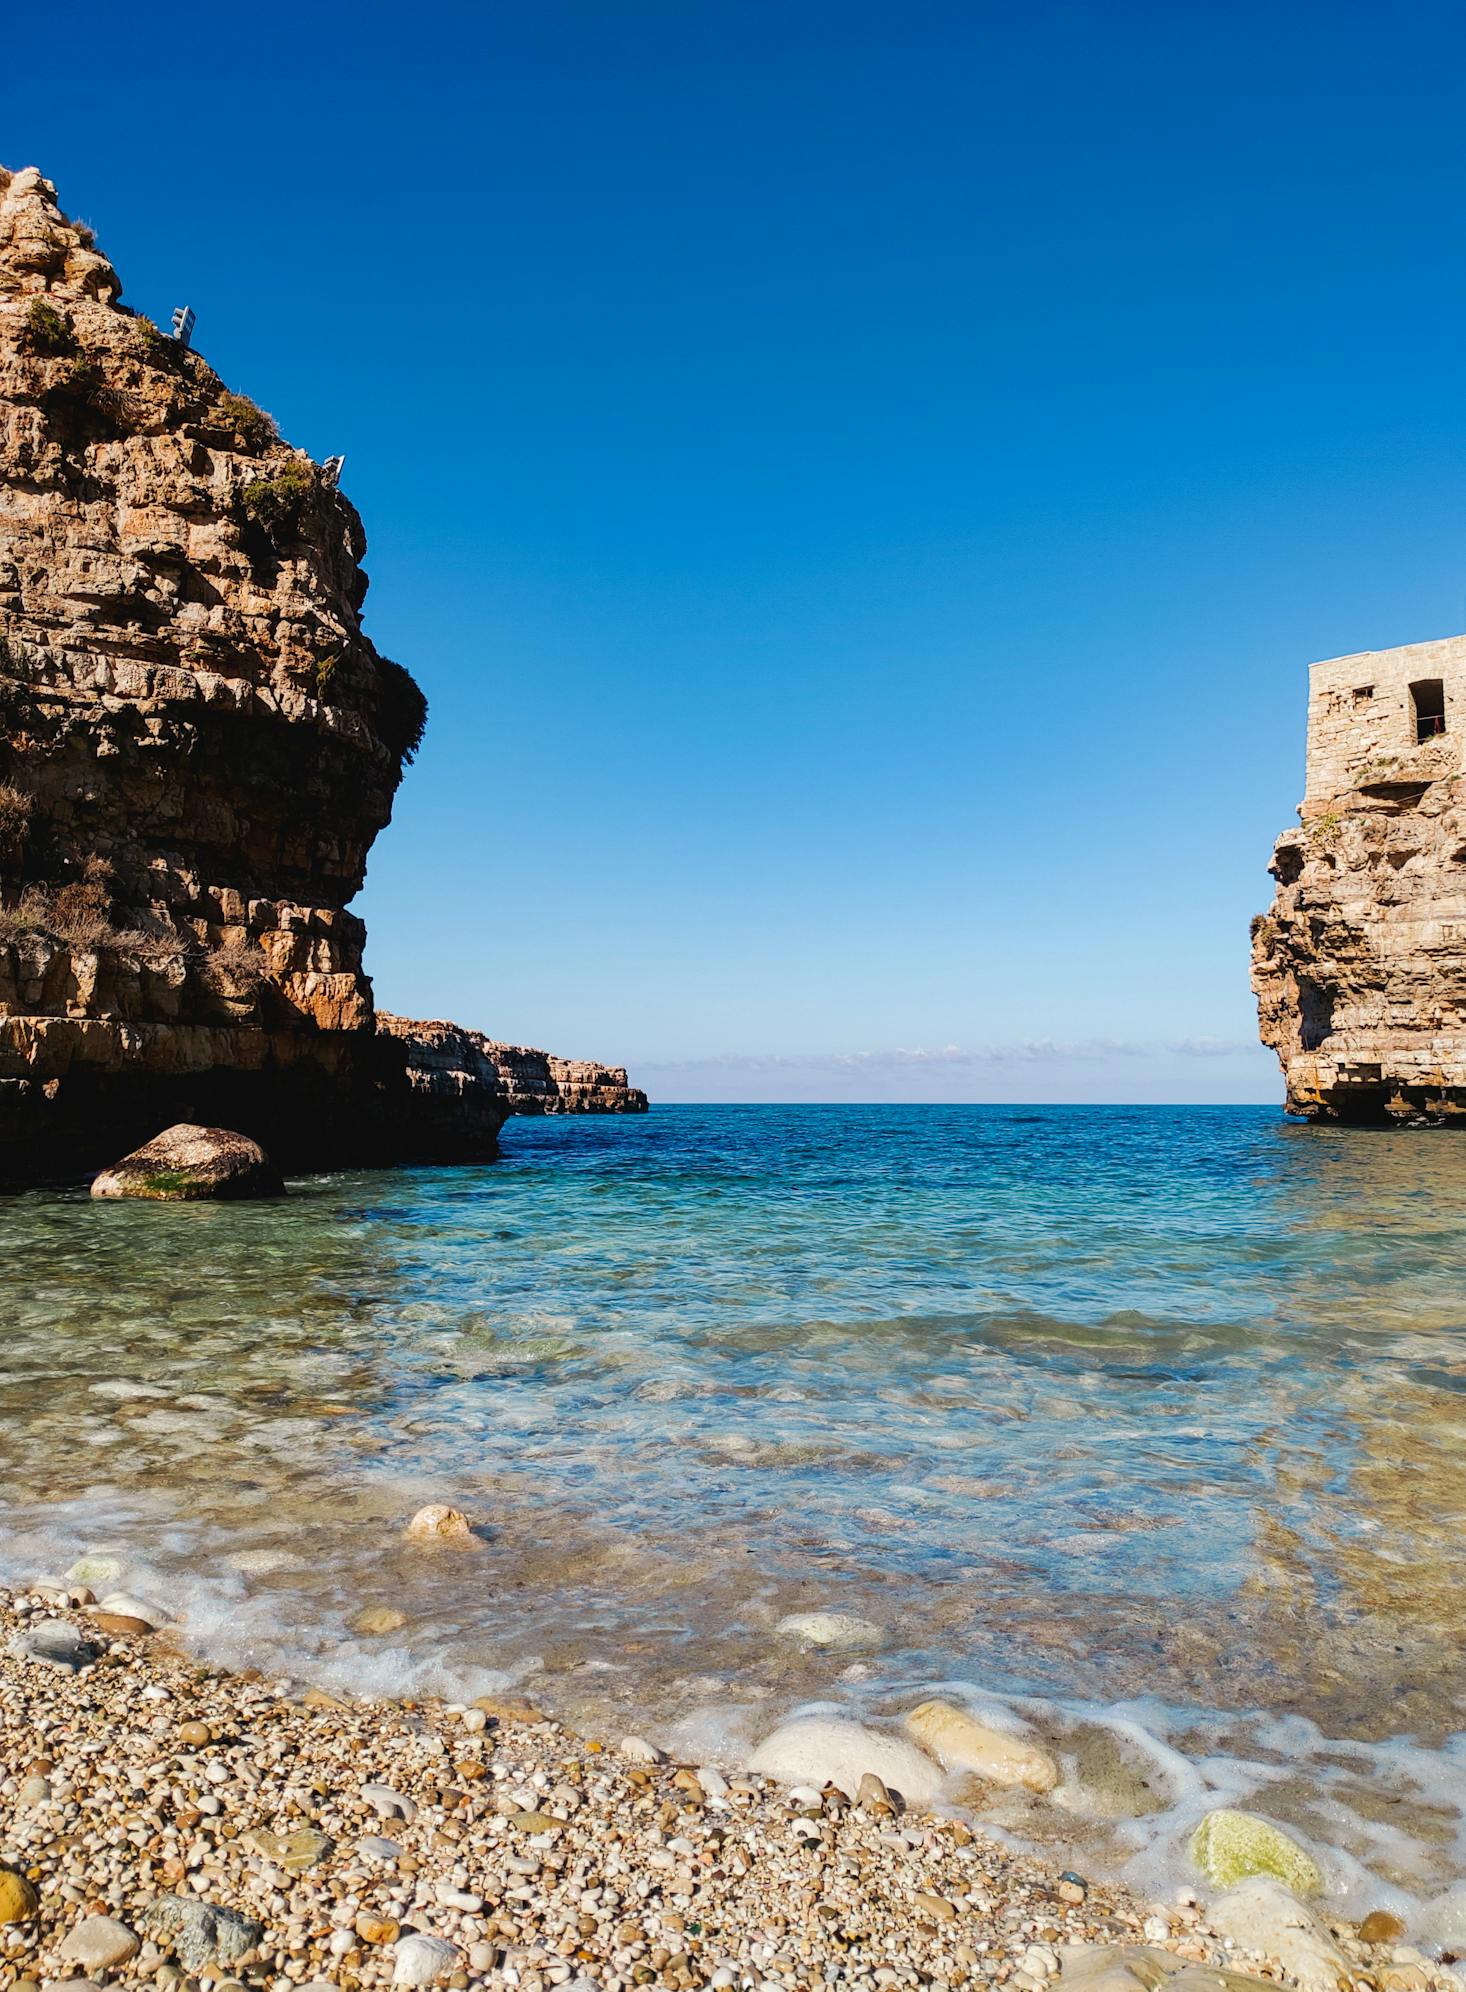 Cliffside beaches near Bari